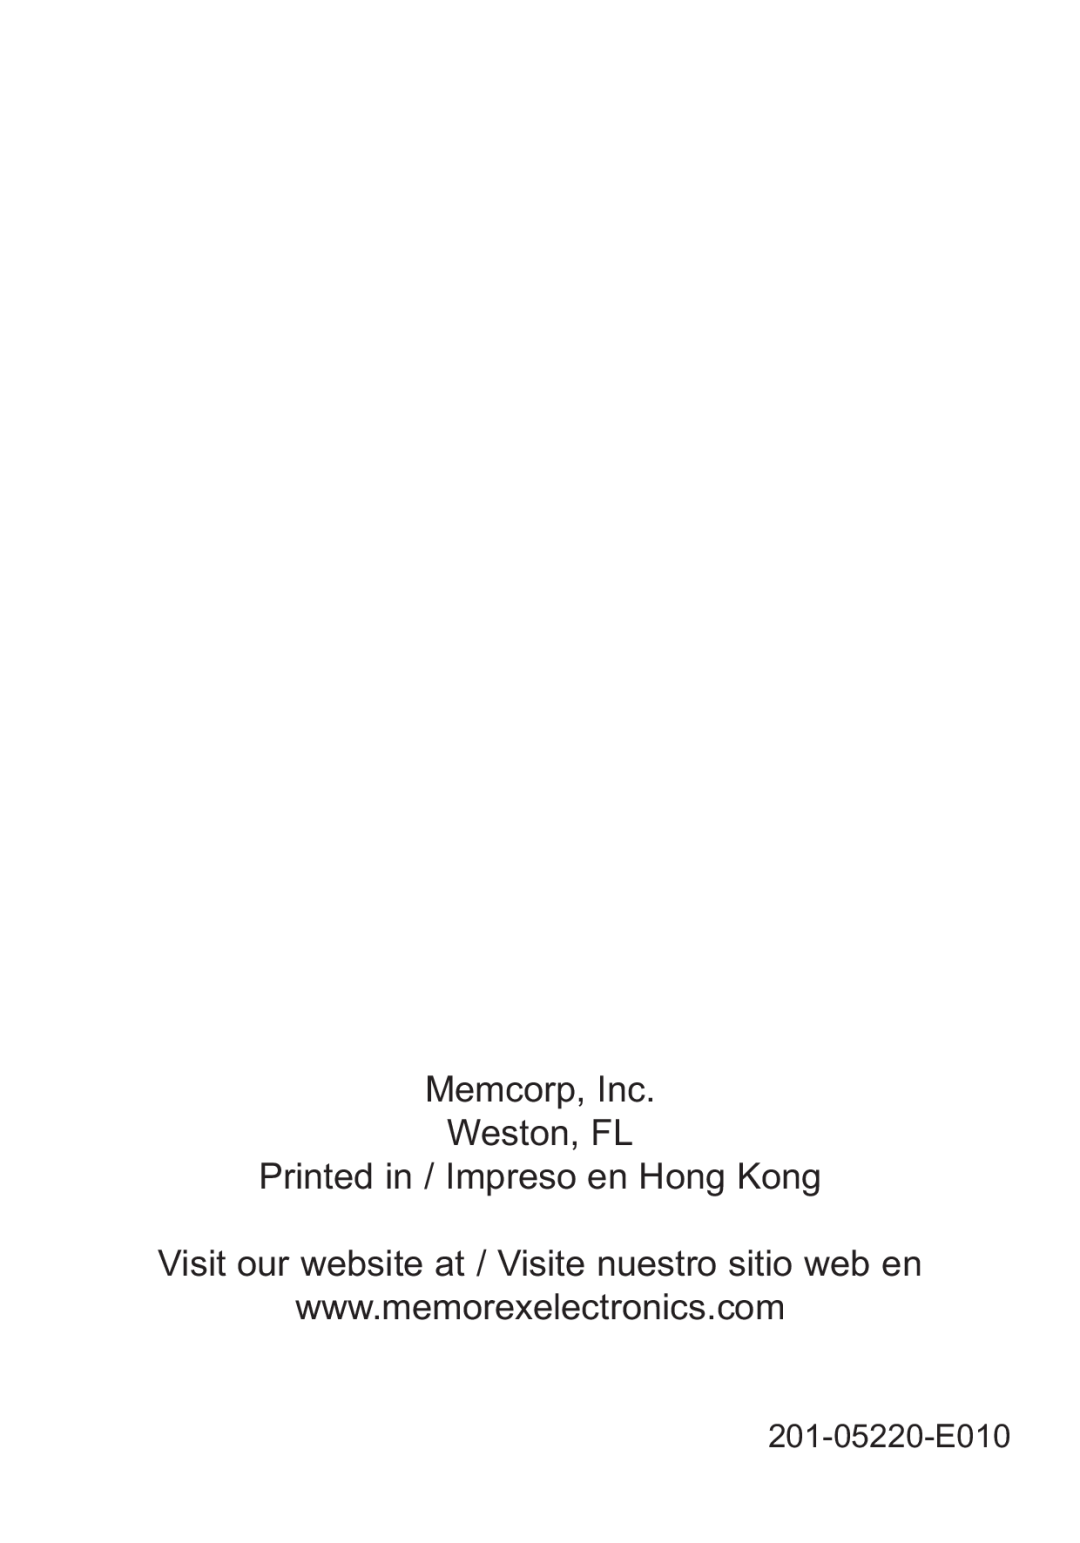 Memorex M12001 manual Visit our website at / Visite nuestro sitio web en, 201-05220-E010 